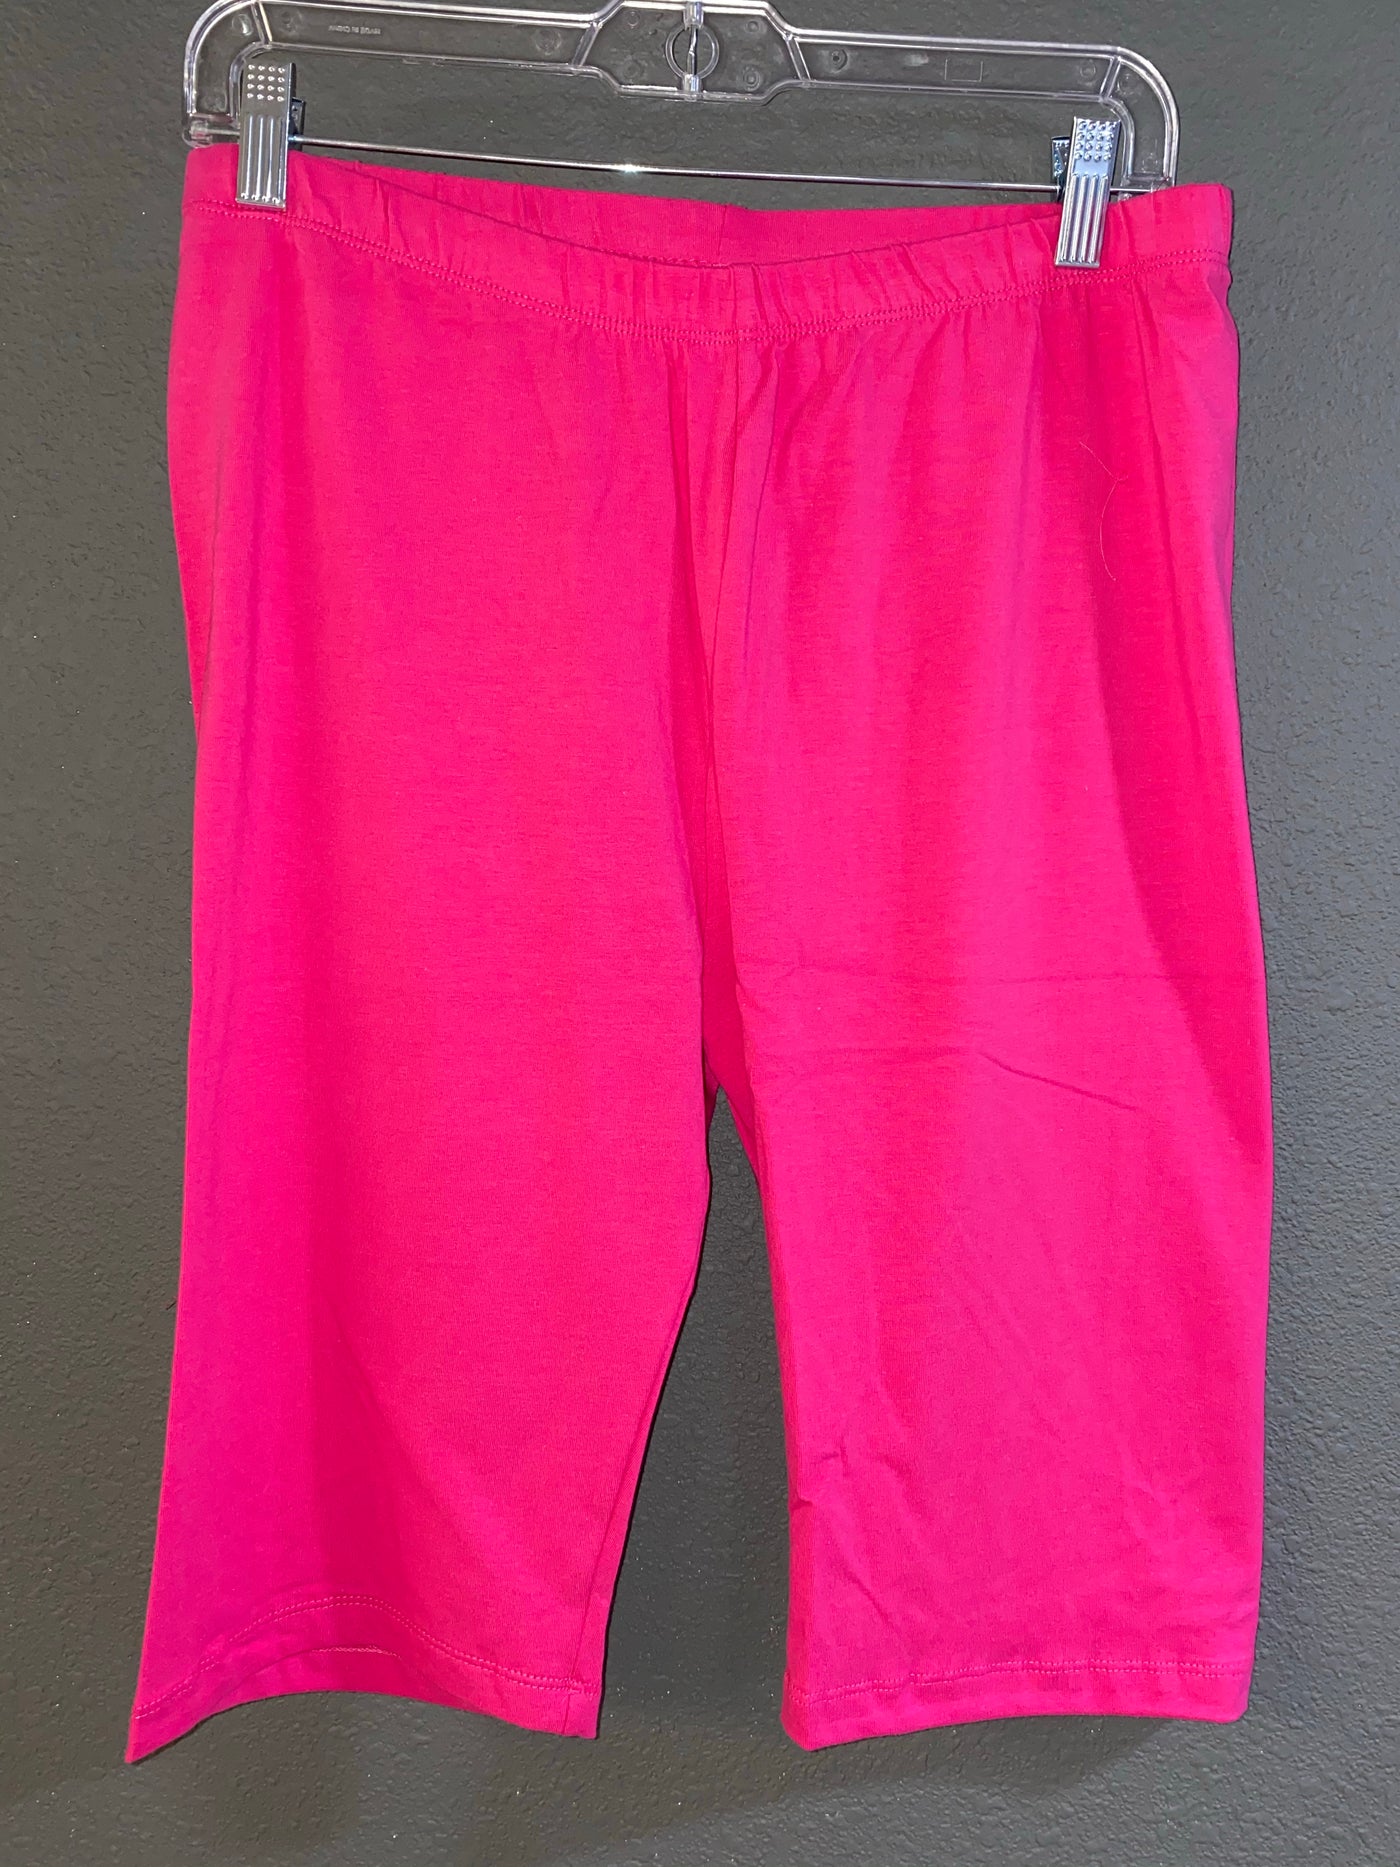 Hot Pink Bermuda Shorts